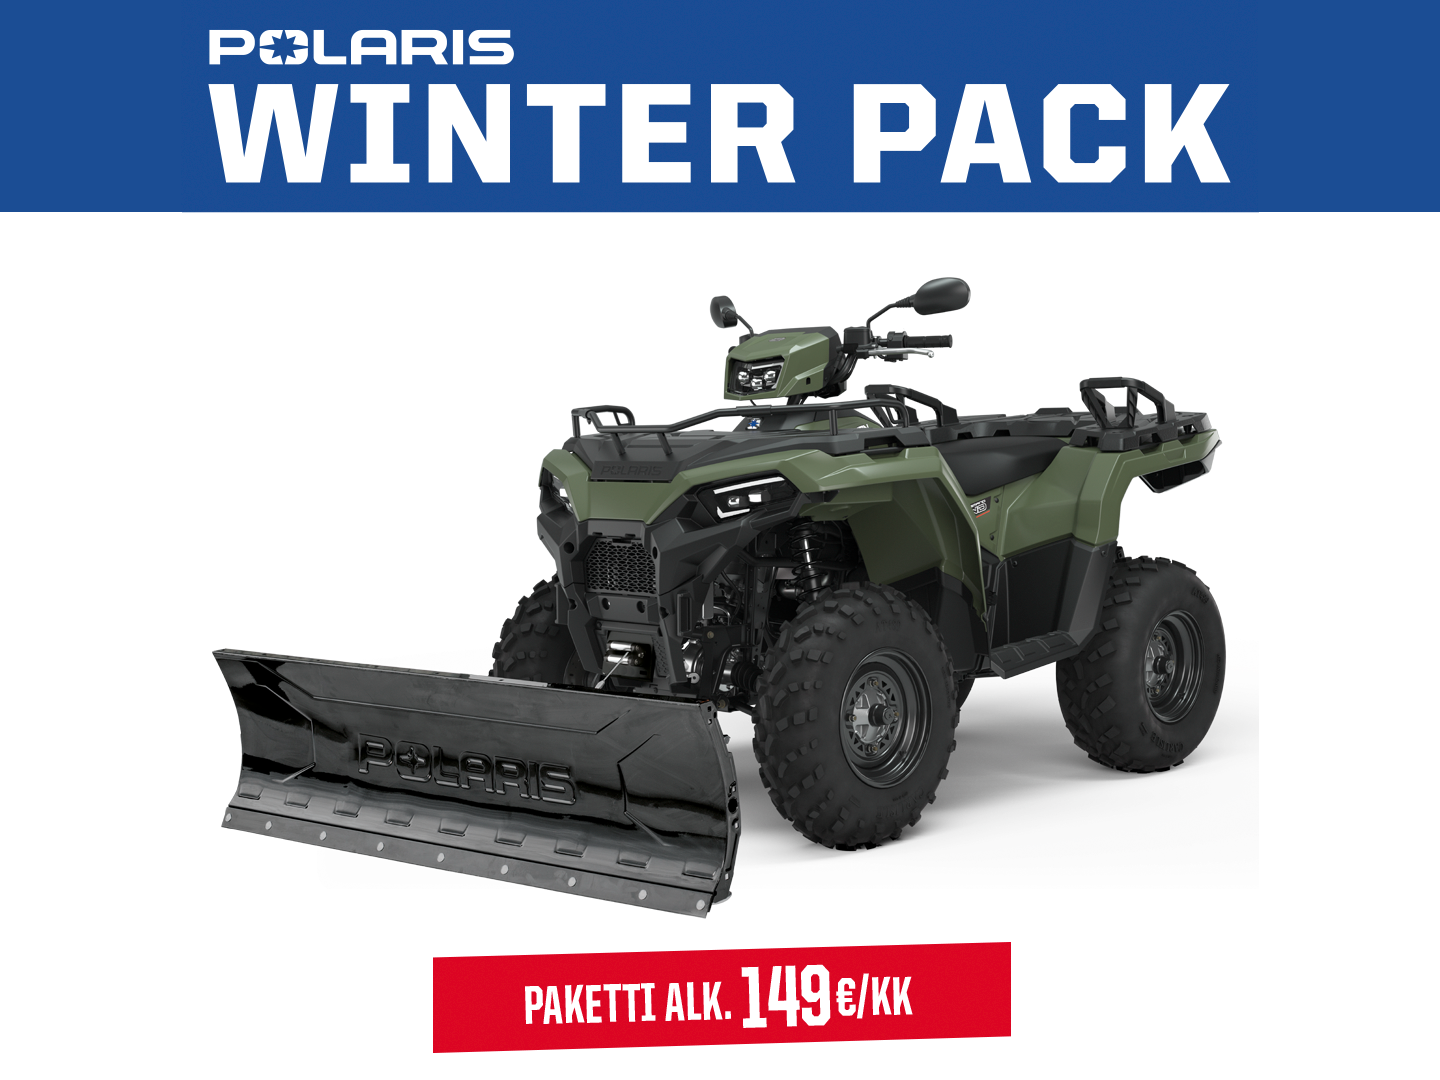 Polaris Winter Pack